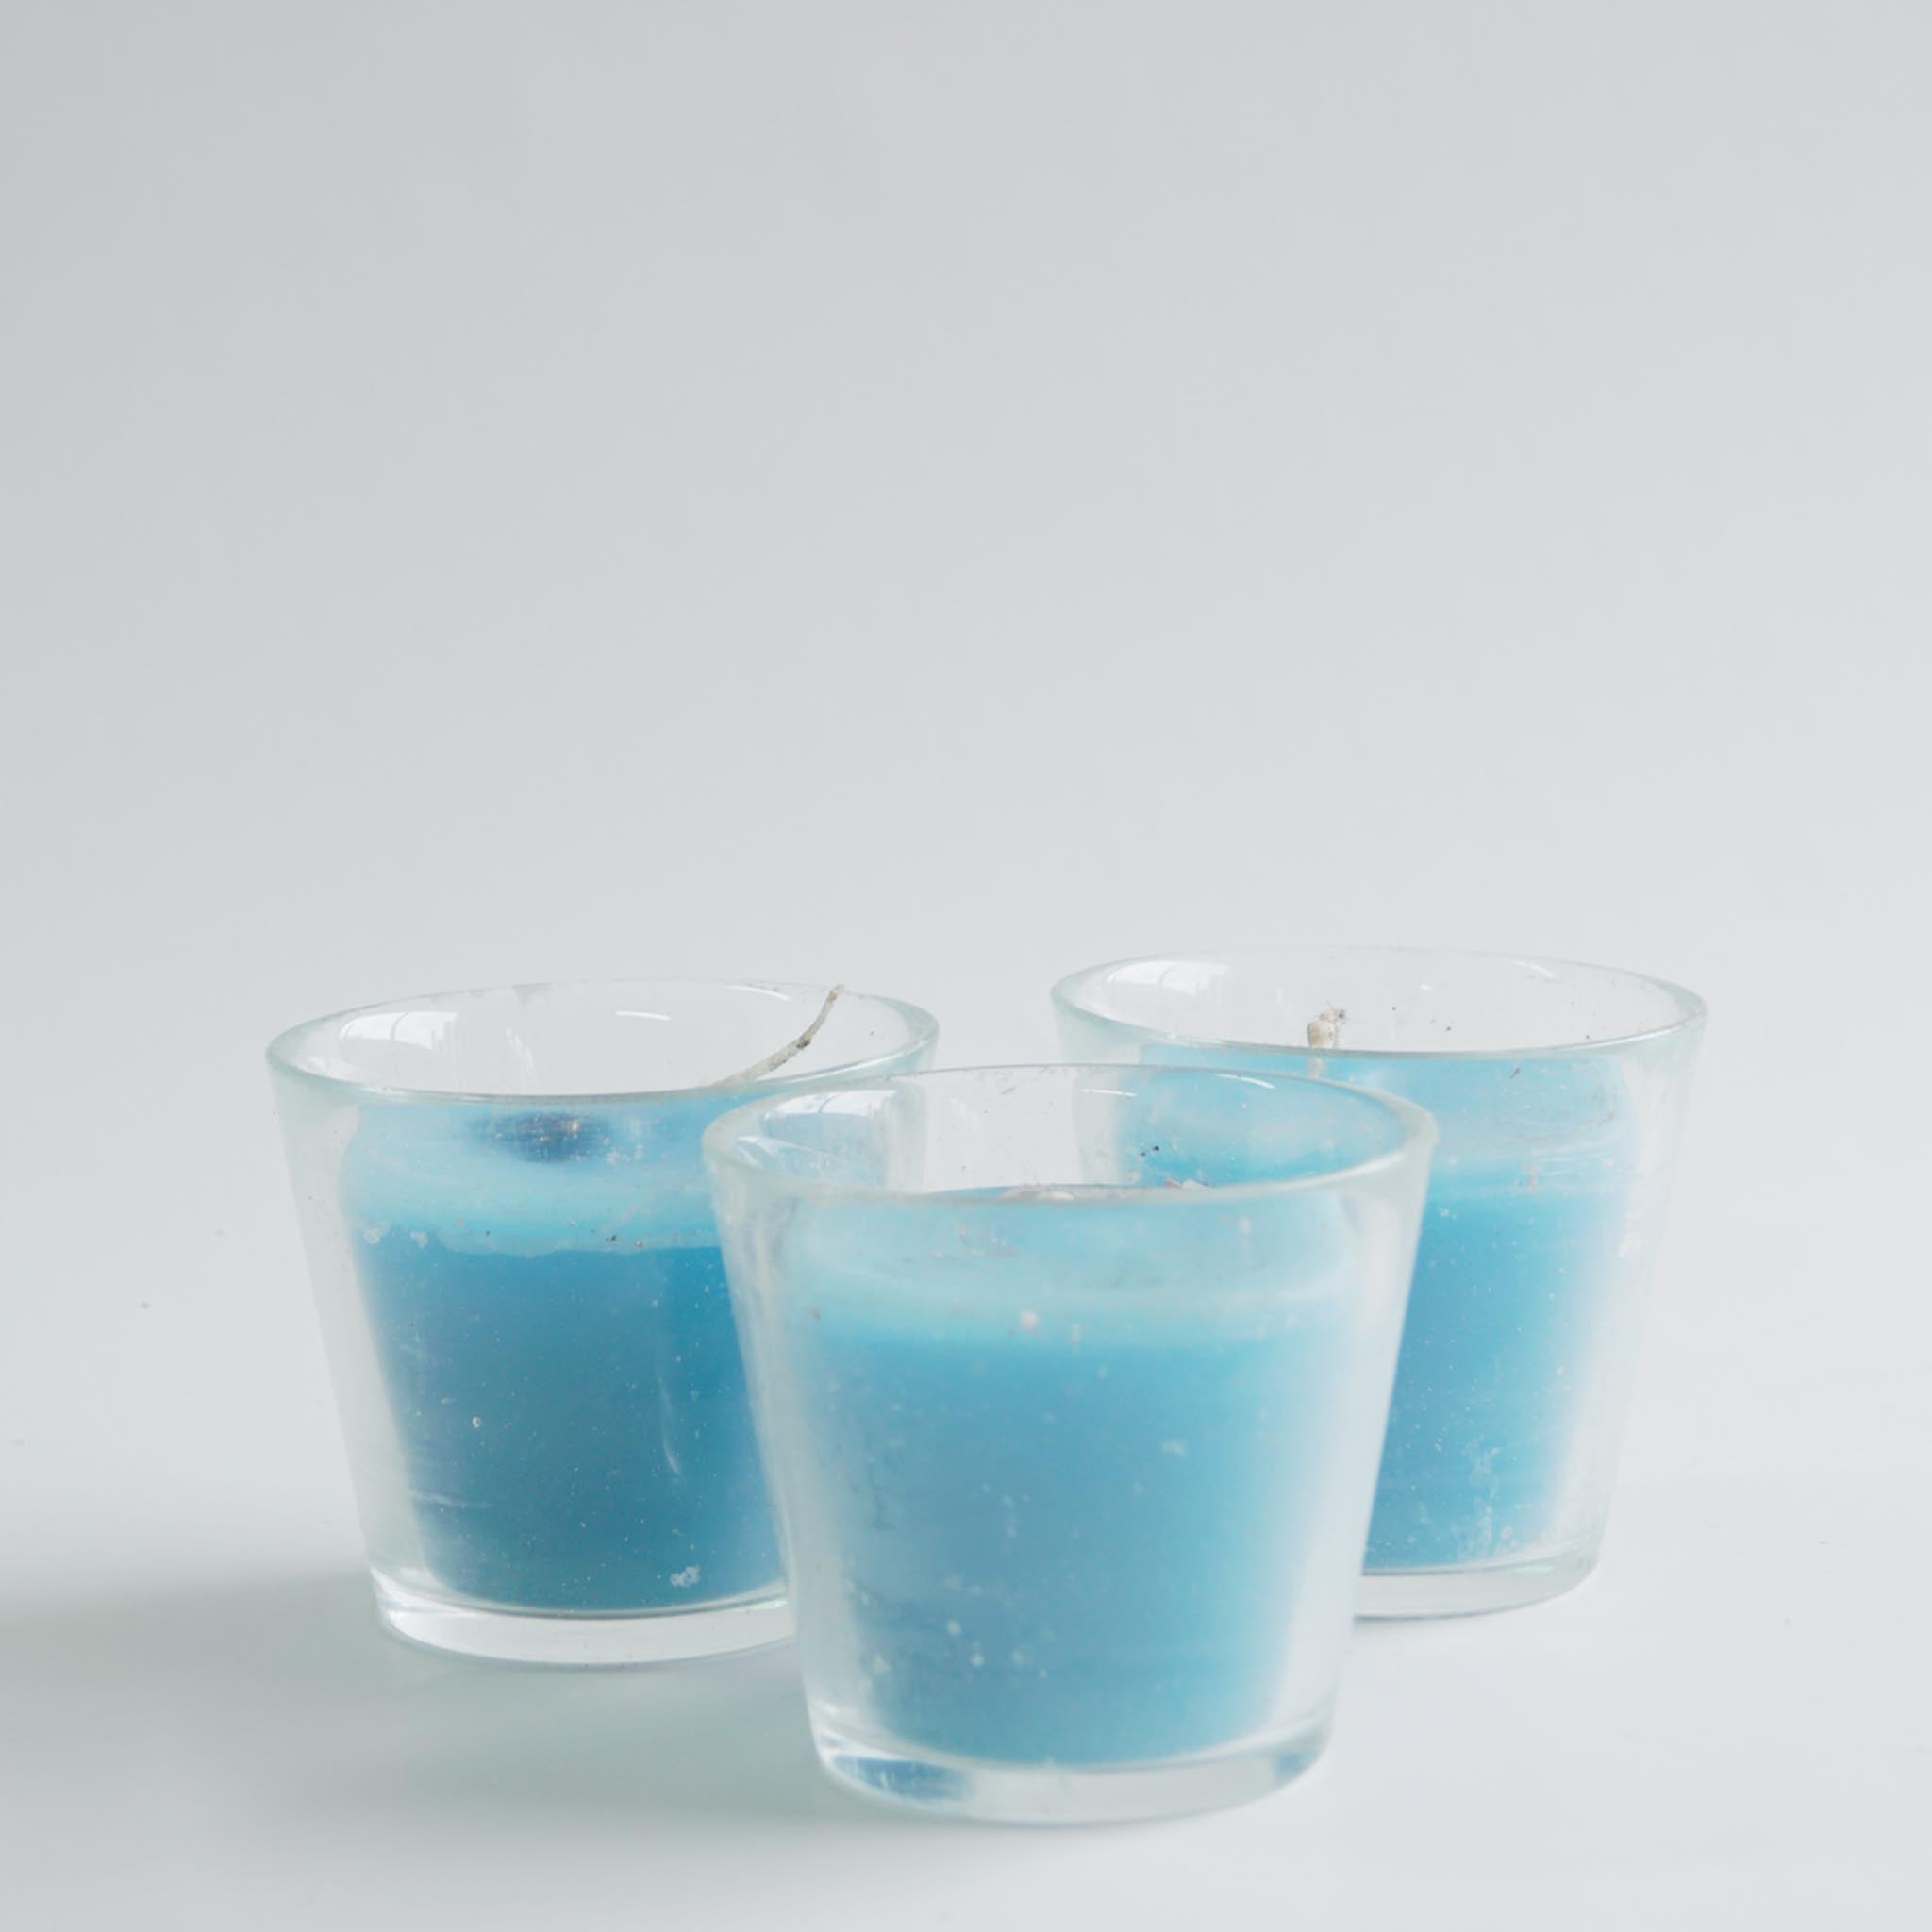 Lume-Kaars in glas, voor buiten - blauw - Schreuder-kraan.shop